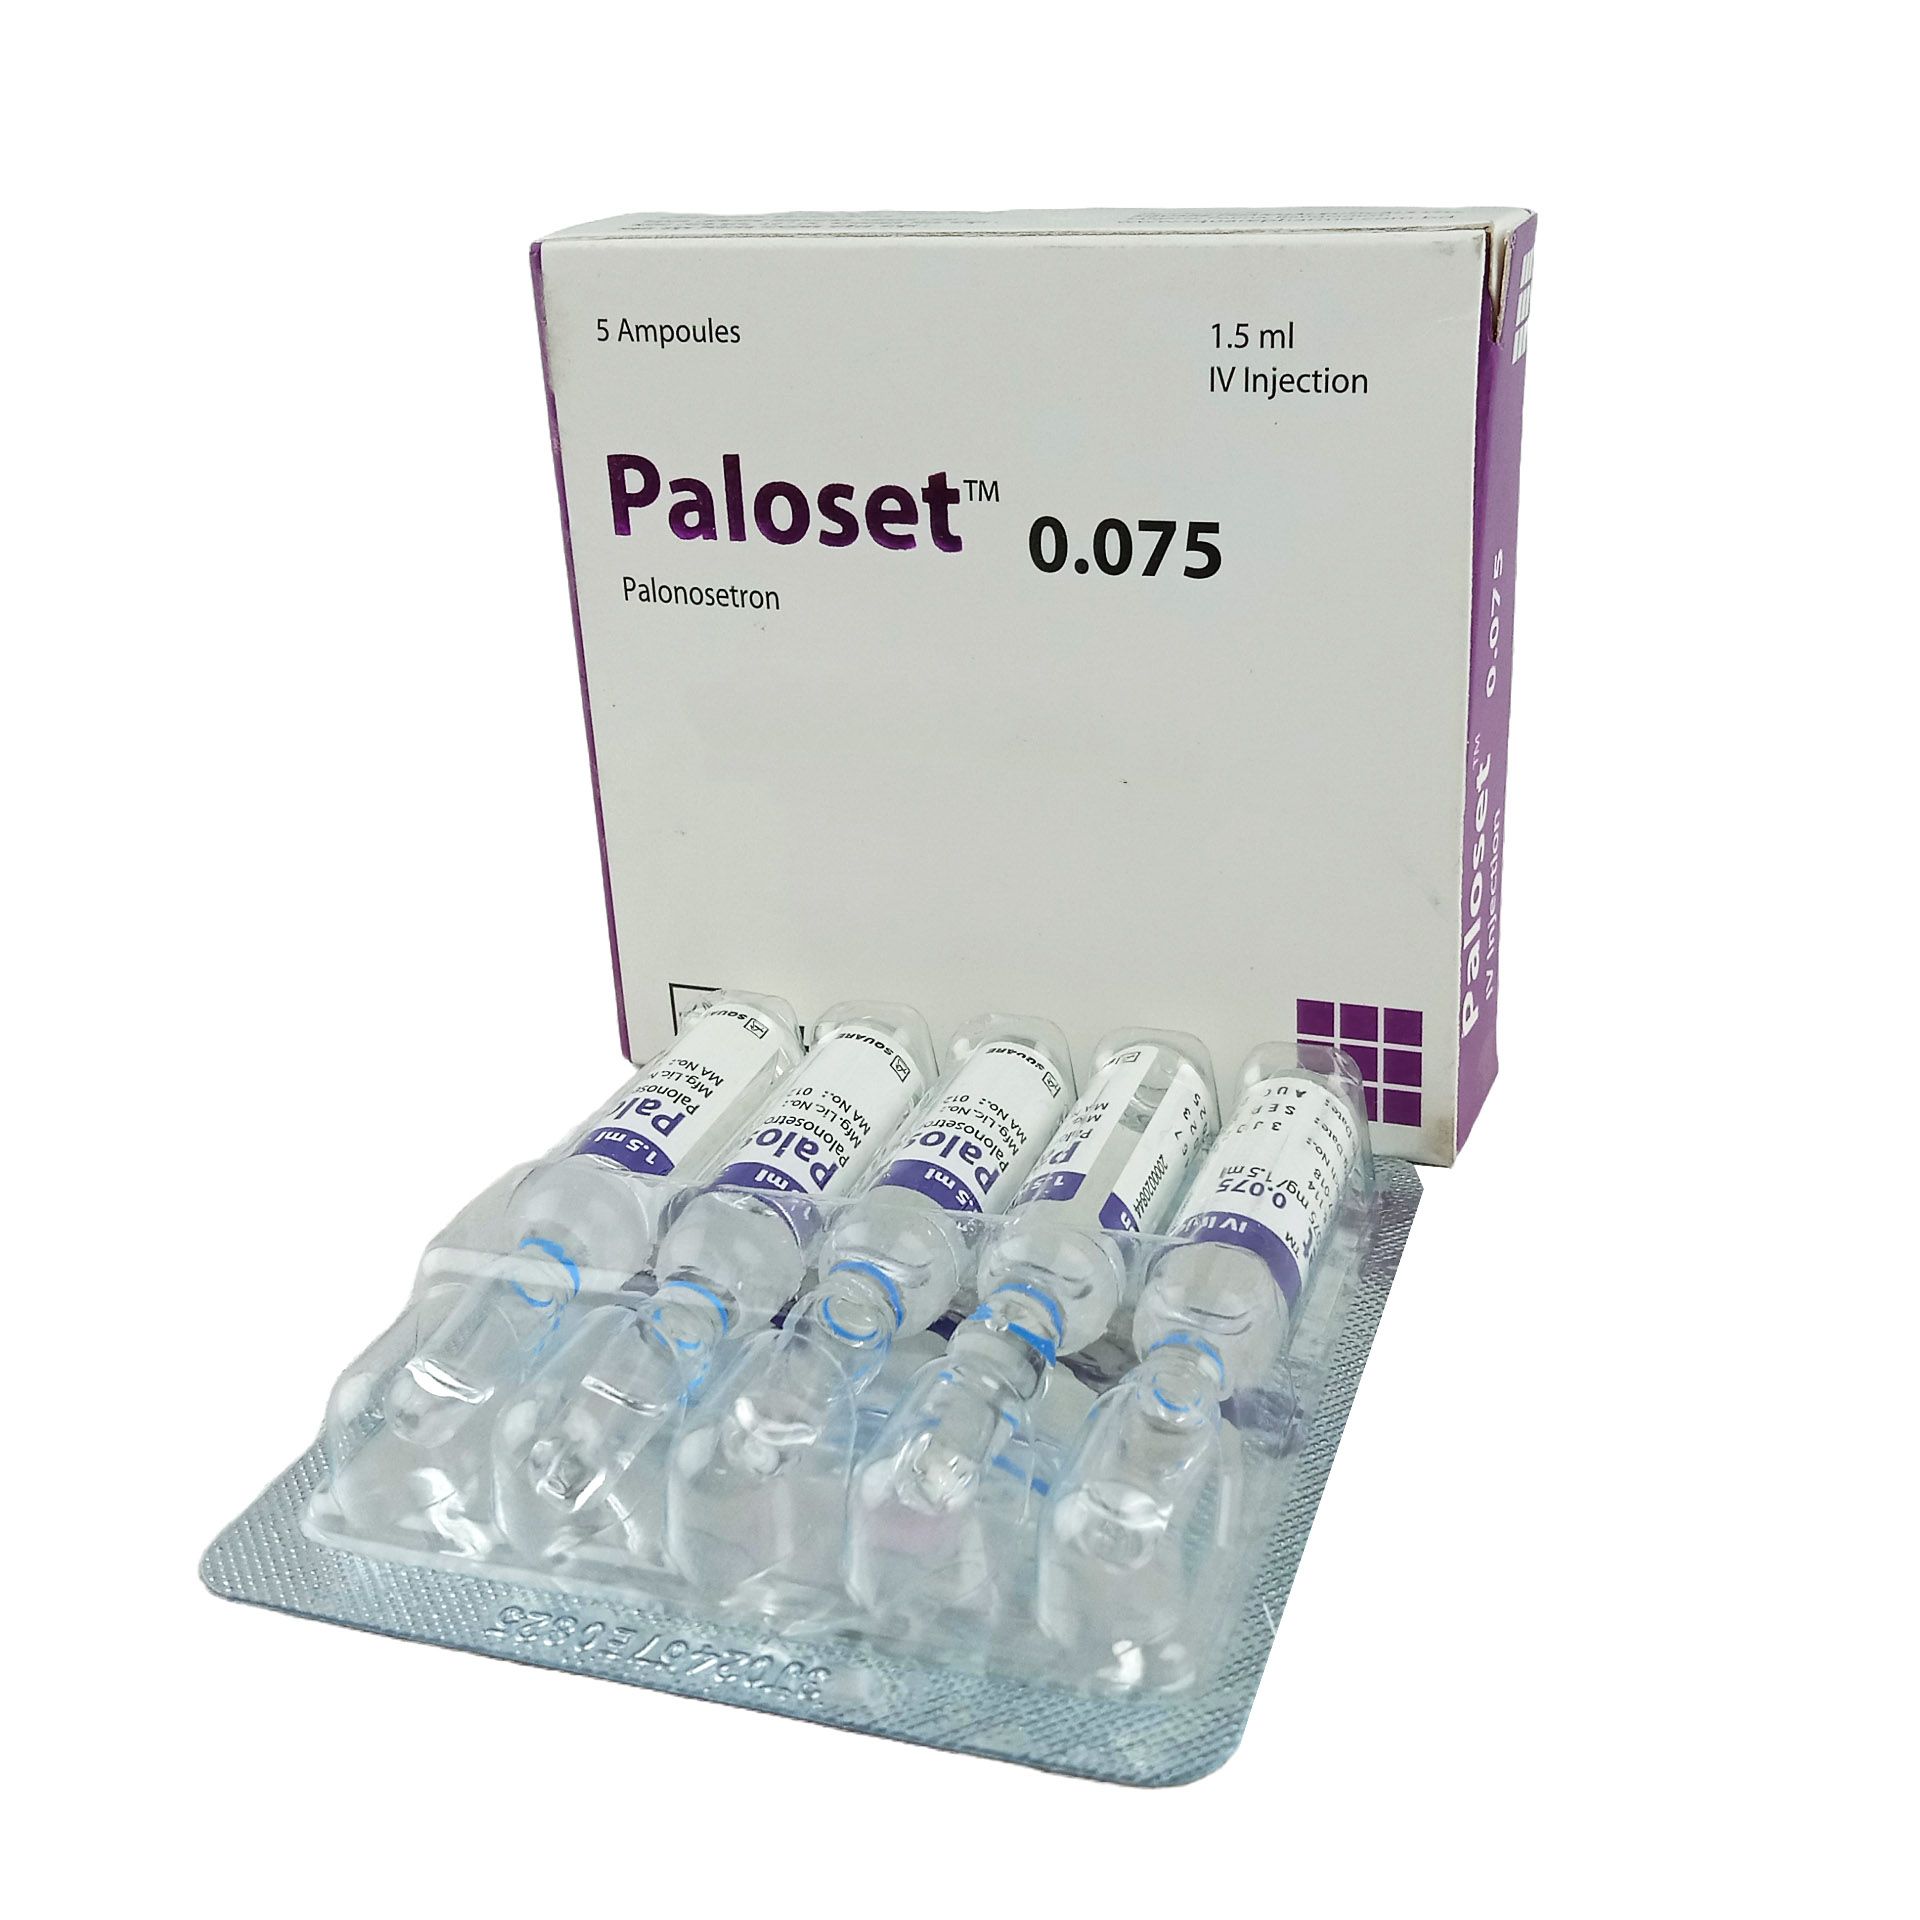 Paloset 0.075mg/1.5ml Injection